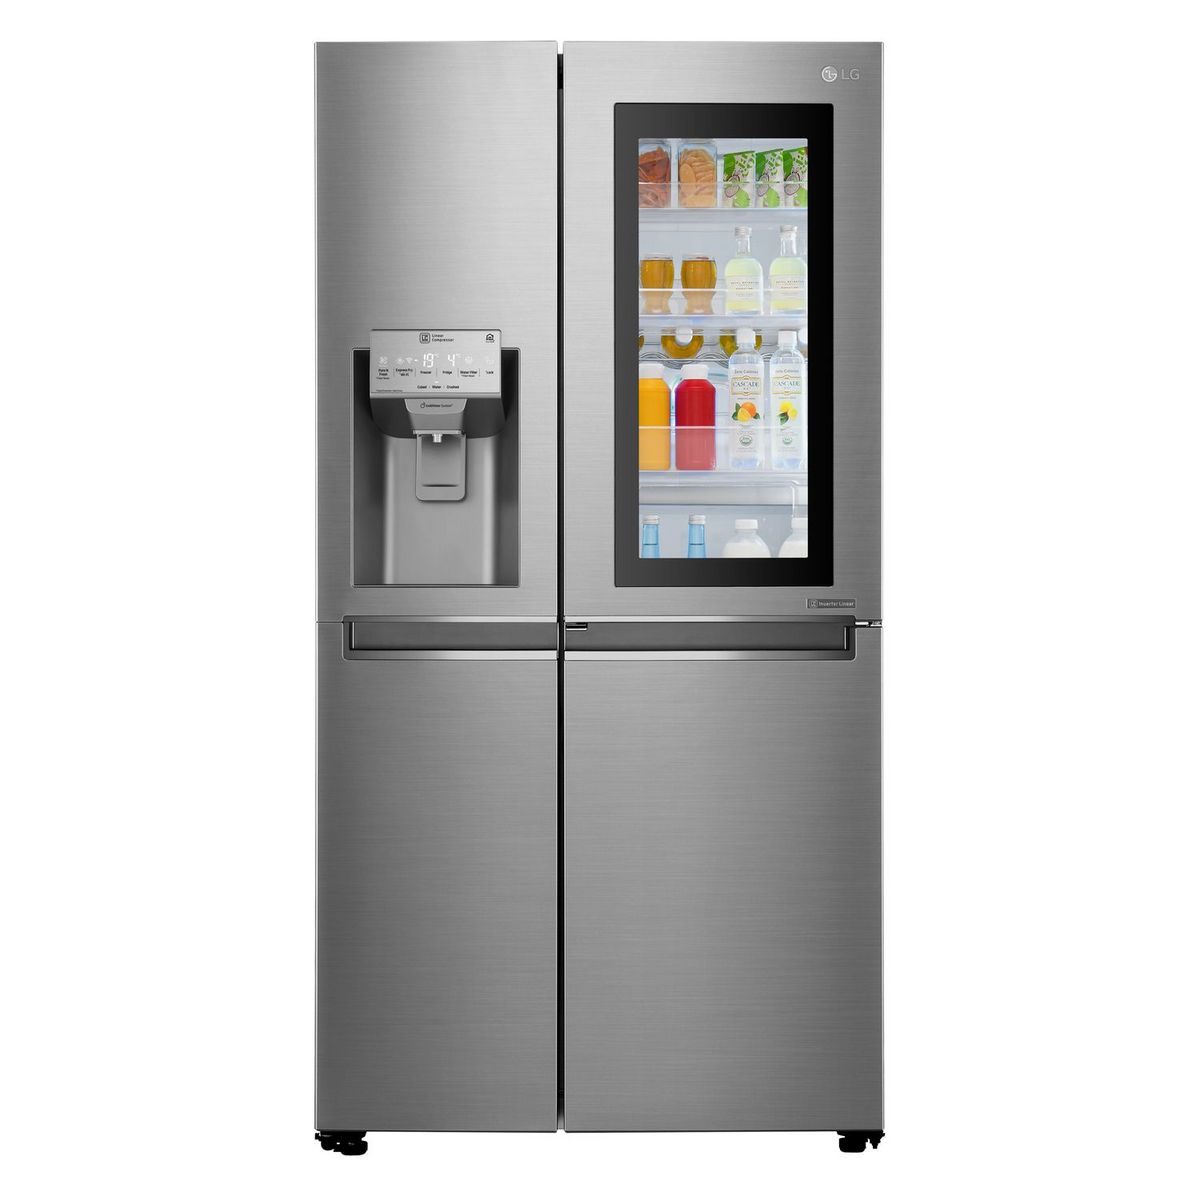 LG Réfrigérateur américain GSI960PZAZ, 625 l, Froid ventilé No frost